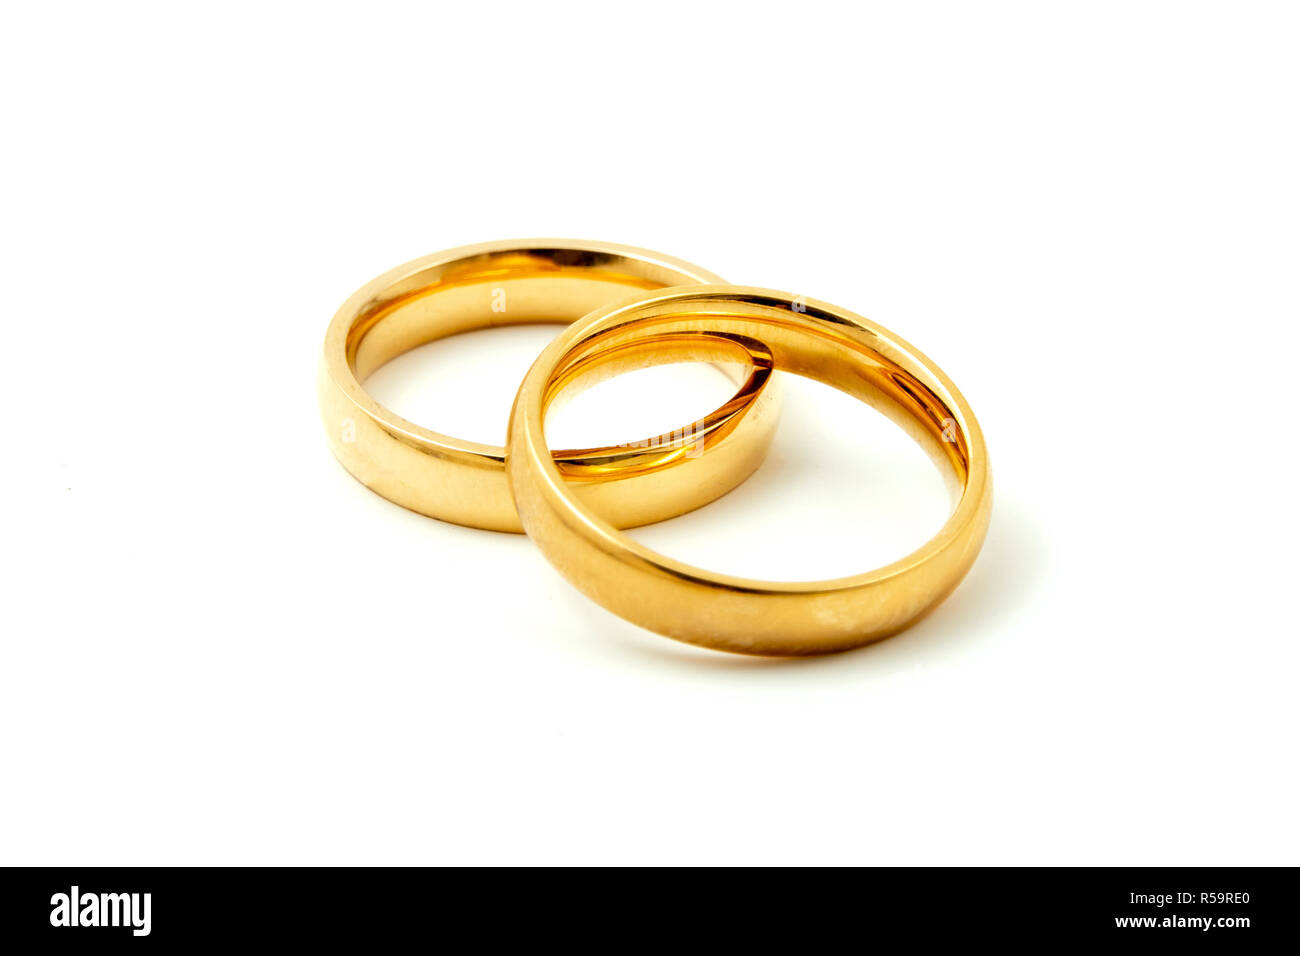 Les anneaux de mariage sur un fond blanc Banque D'Images